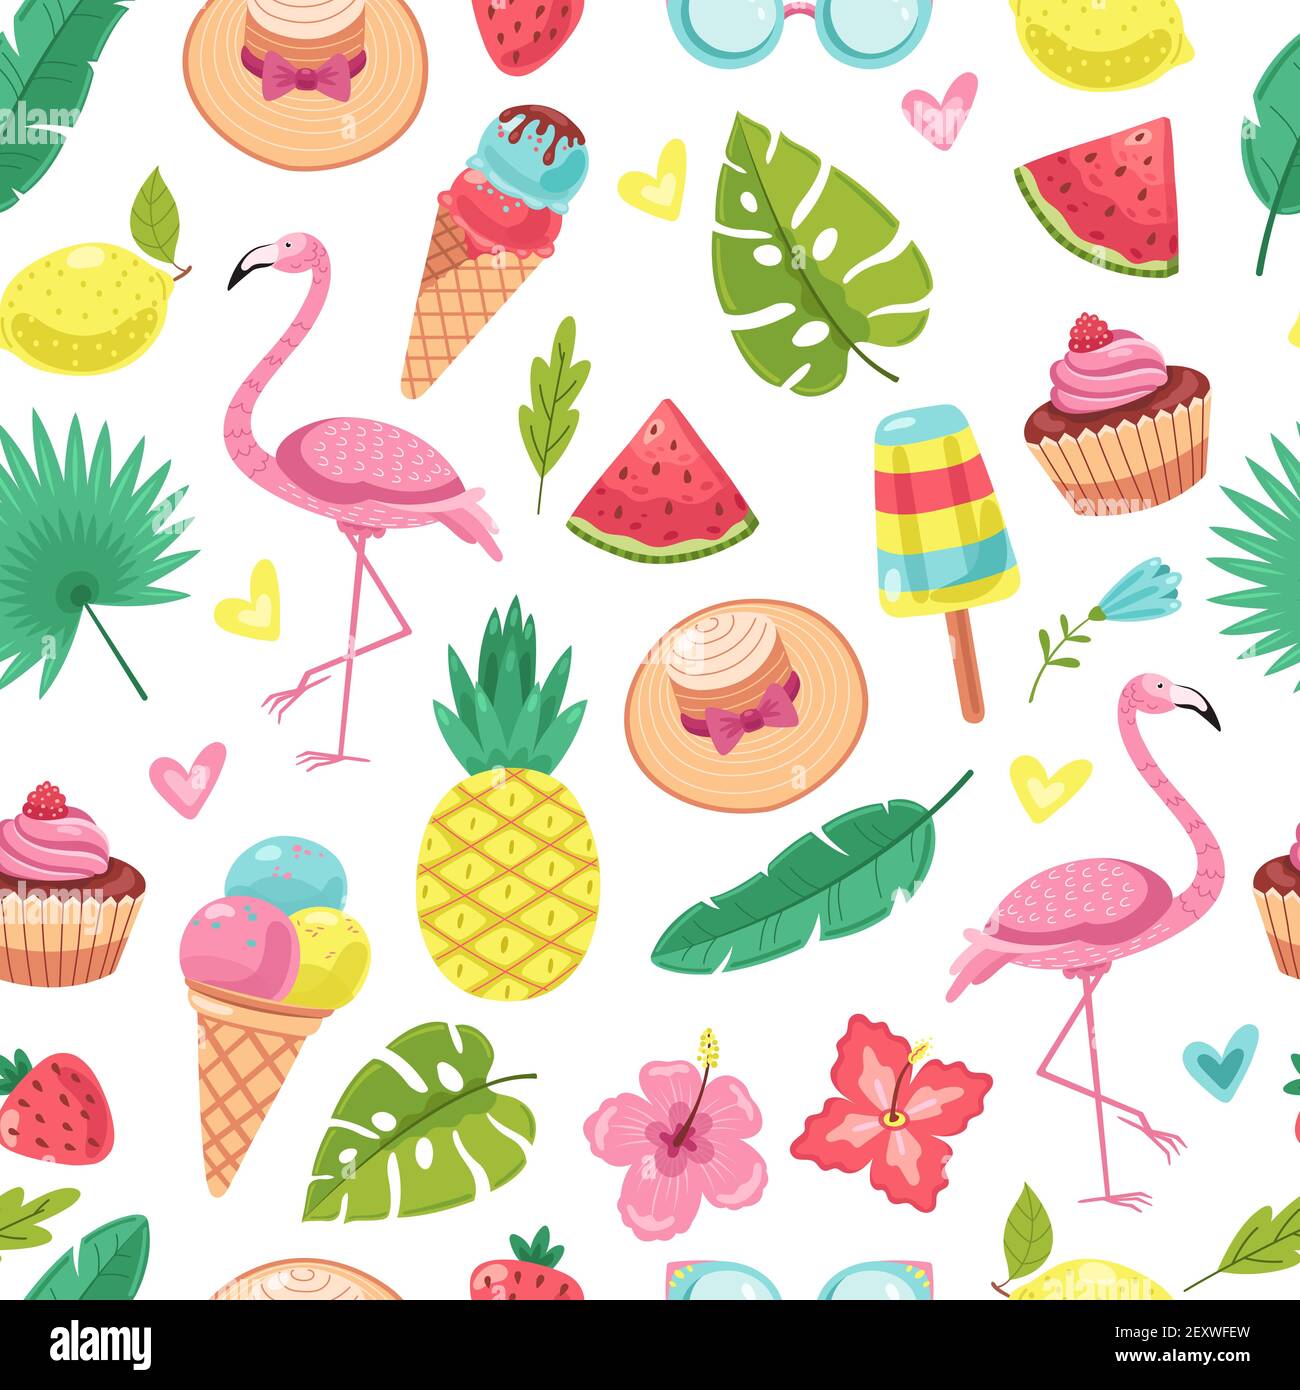 Sommerliches Nahtmuster. Tropischer Flamingo, Eis und Ananas, Blätter und Cocktail, Wassermelone, Blumen Vektor Textur. Flamingo und Ananas Muster, Blume und Wassermelone Illustration Stock Vektor